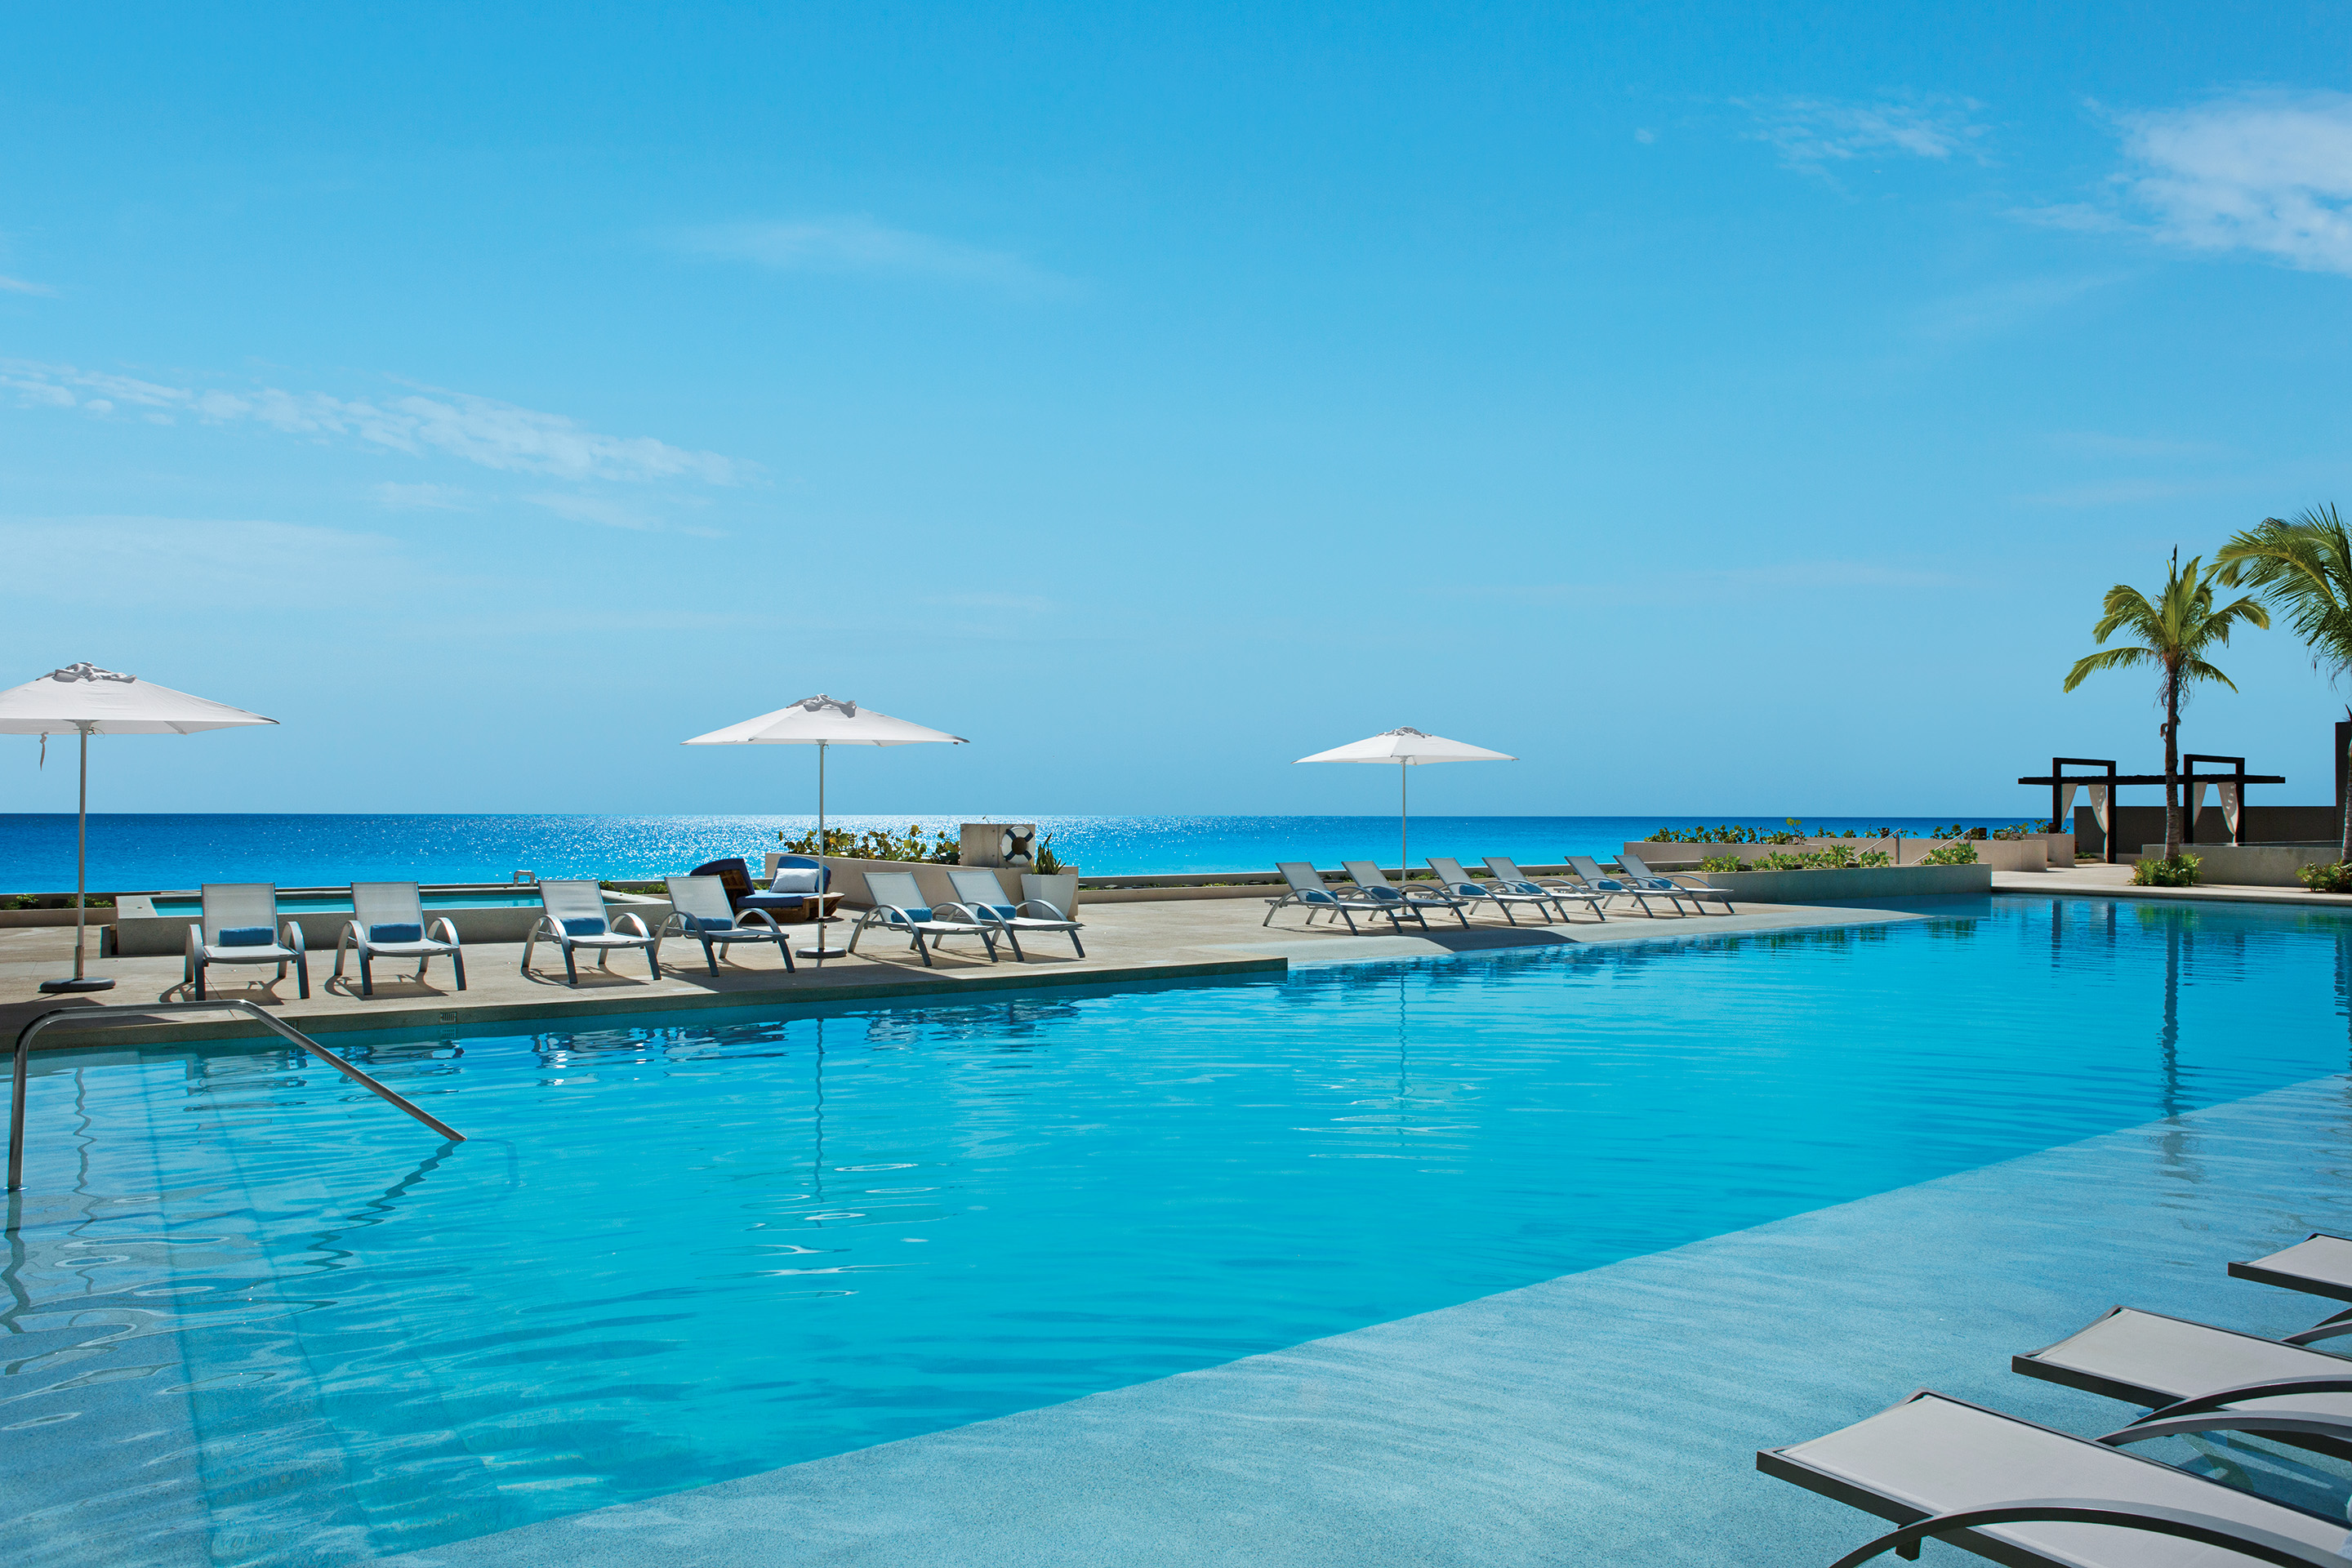 Private Vine Cancun Resort